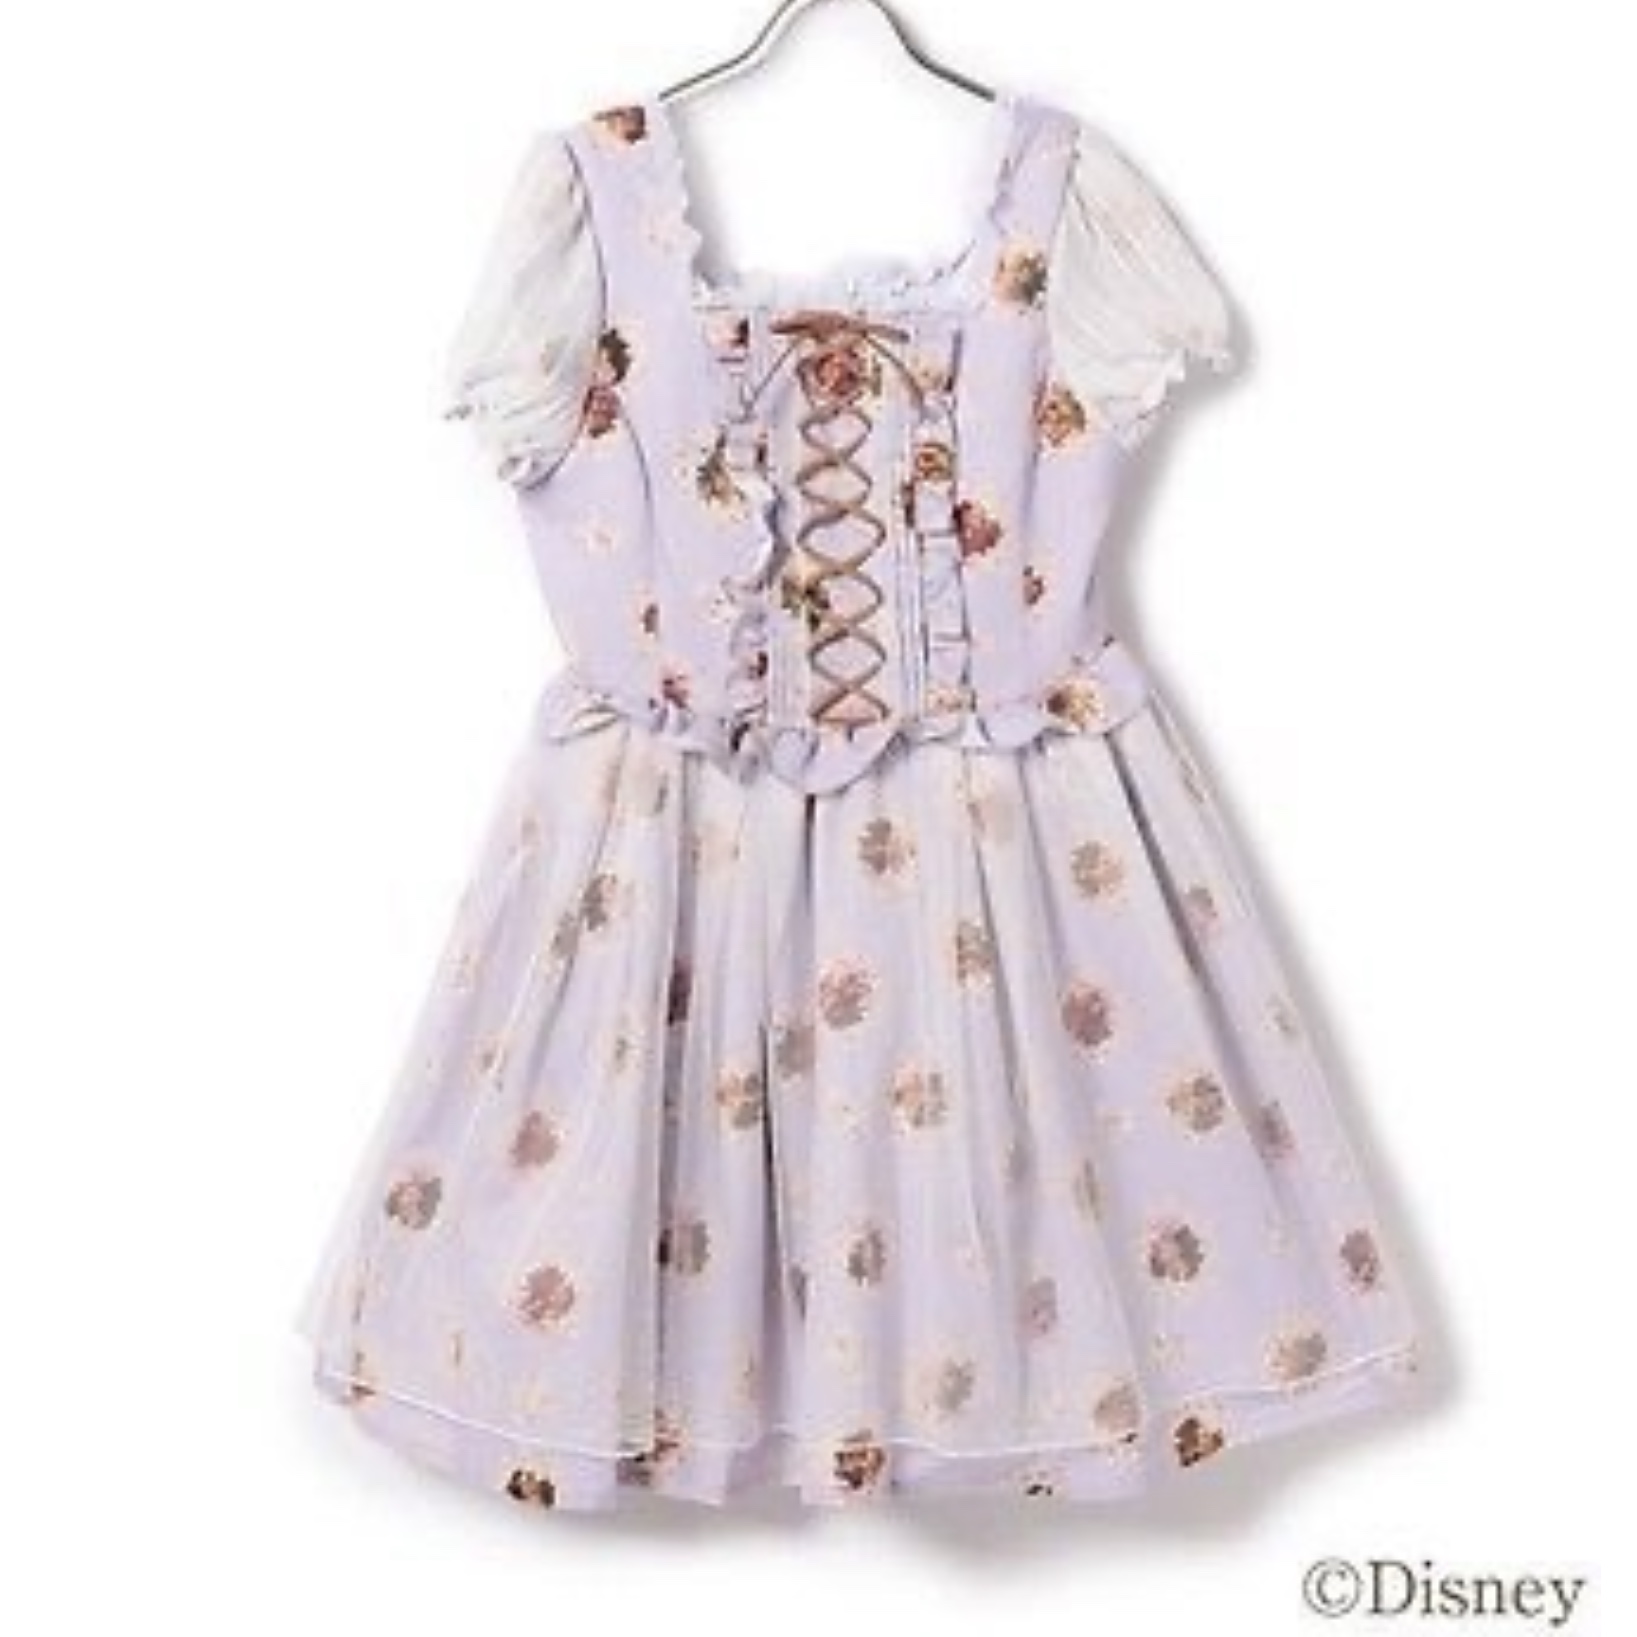 Disney Store Na vlásku x Liz Lisa: Šaty v štýle Rapunzel